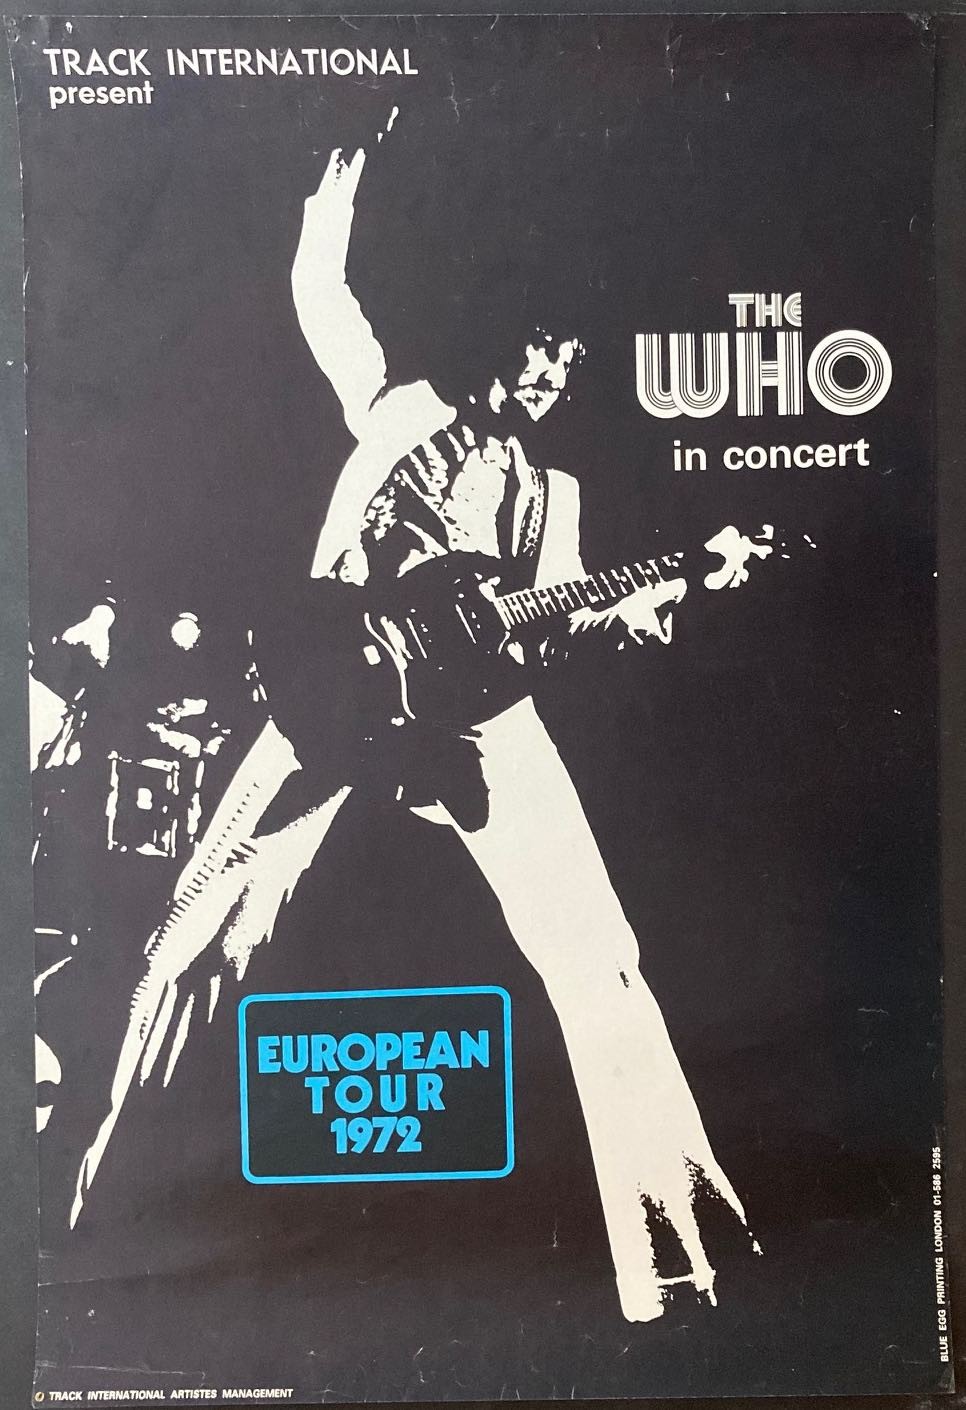 WHO: European Your 1972